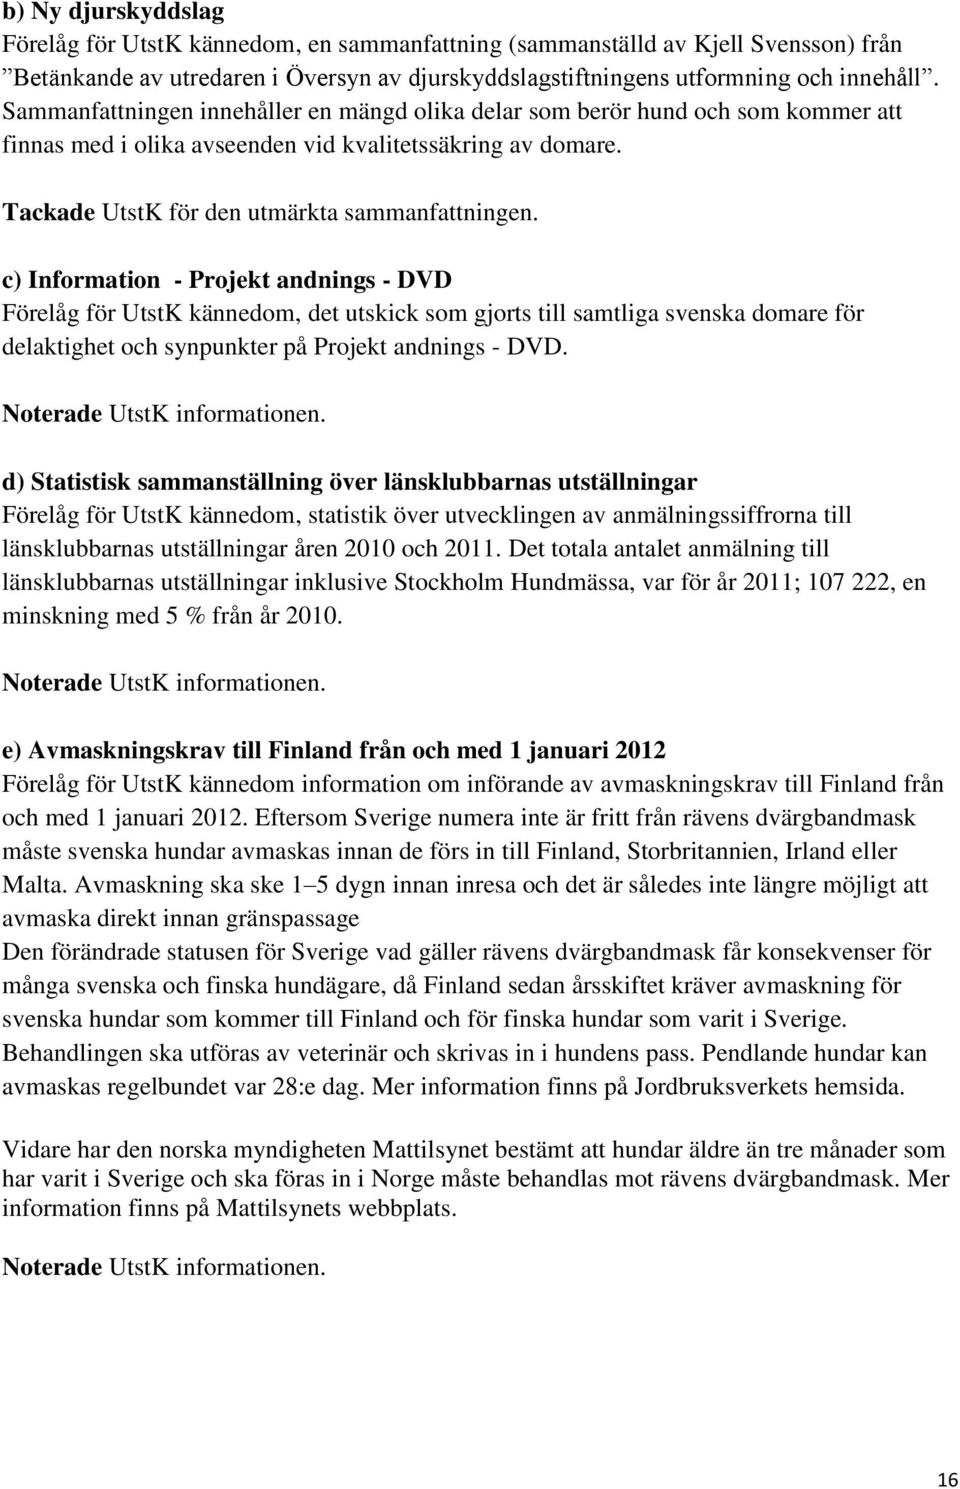 c) Information - Projekt andnings - DVD Förelåg för UtstK kännedom, det utskick som gjorts till samtliga svenska domare för delaktighet och synpunkter på Projekt andnings - DVD.